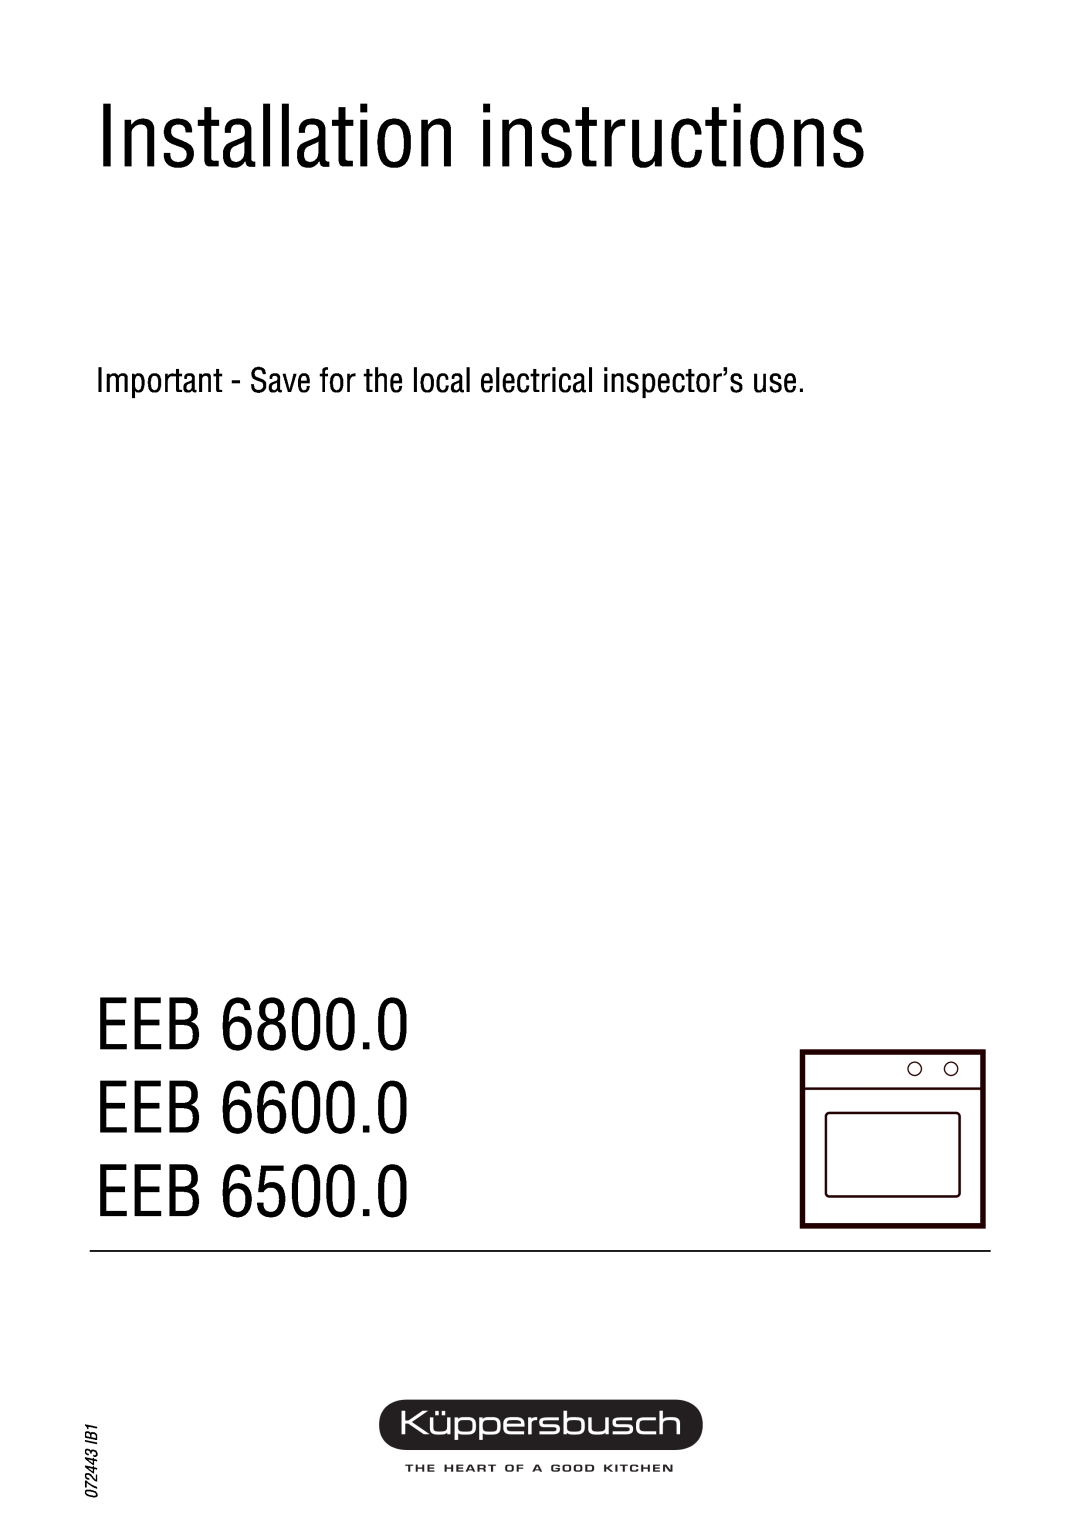 Kuppersbusch USA EKS 304.1, EGS 304.2 installation instructions Installation instructions, Eeb Eeb Eeb, 072443 IB1 